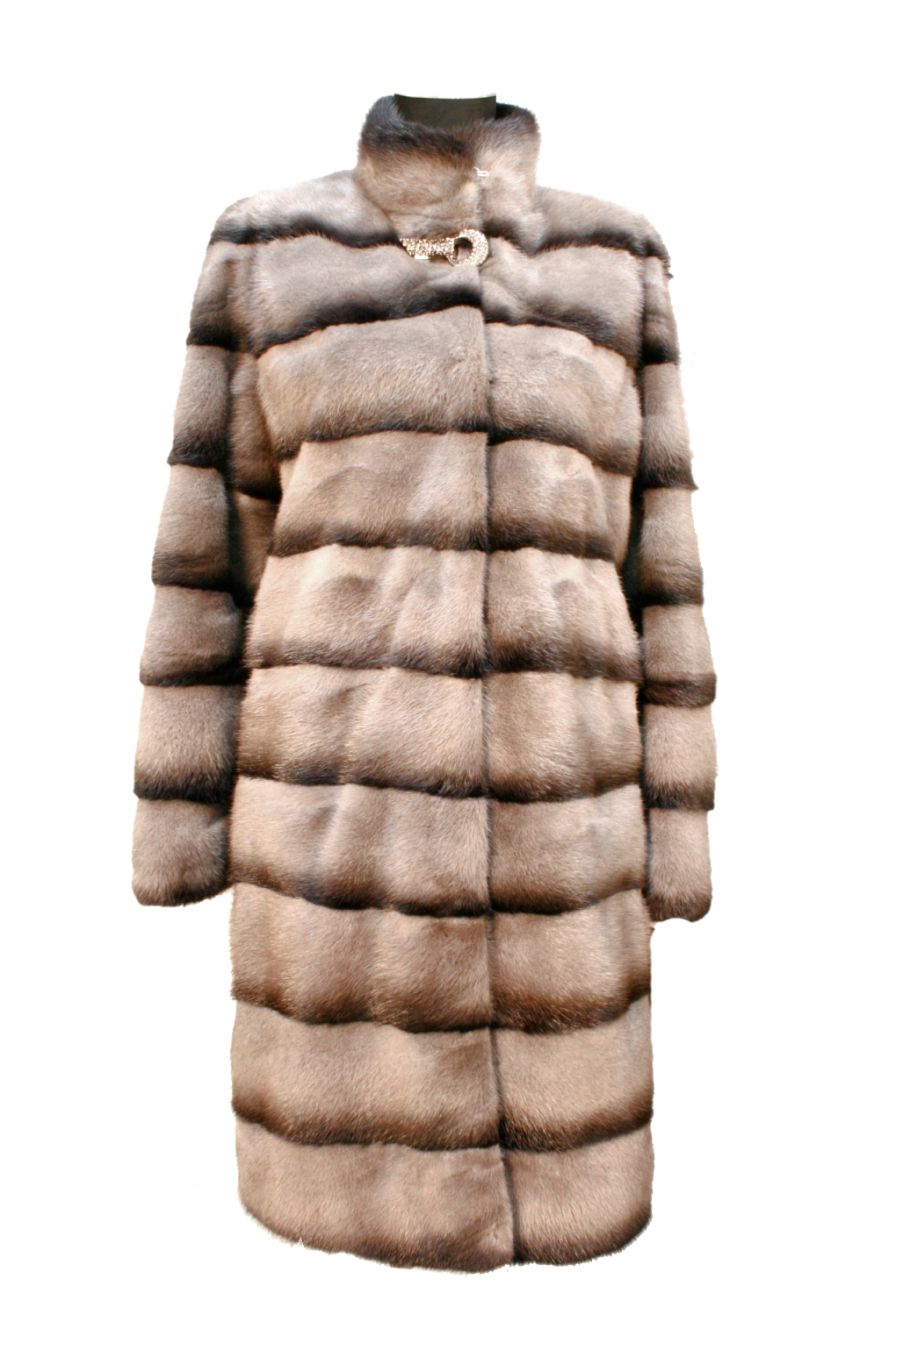 Fur coat PNG    图片编号:40223